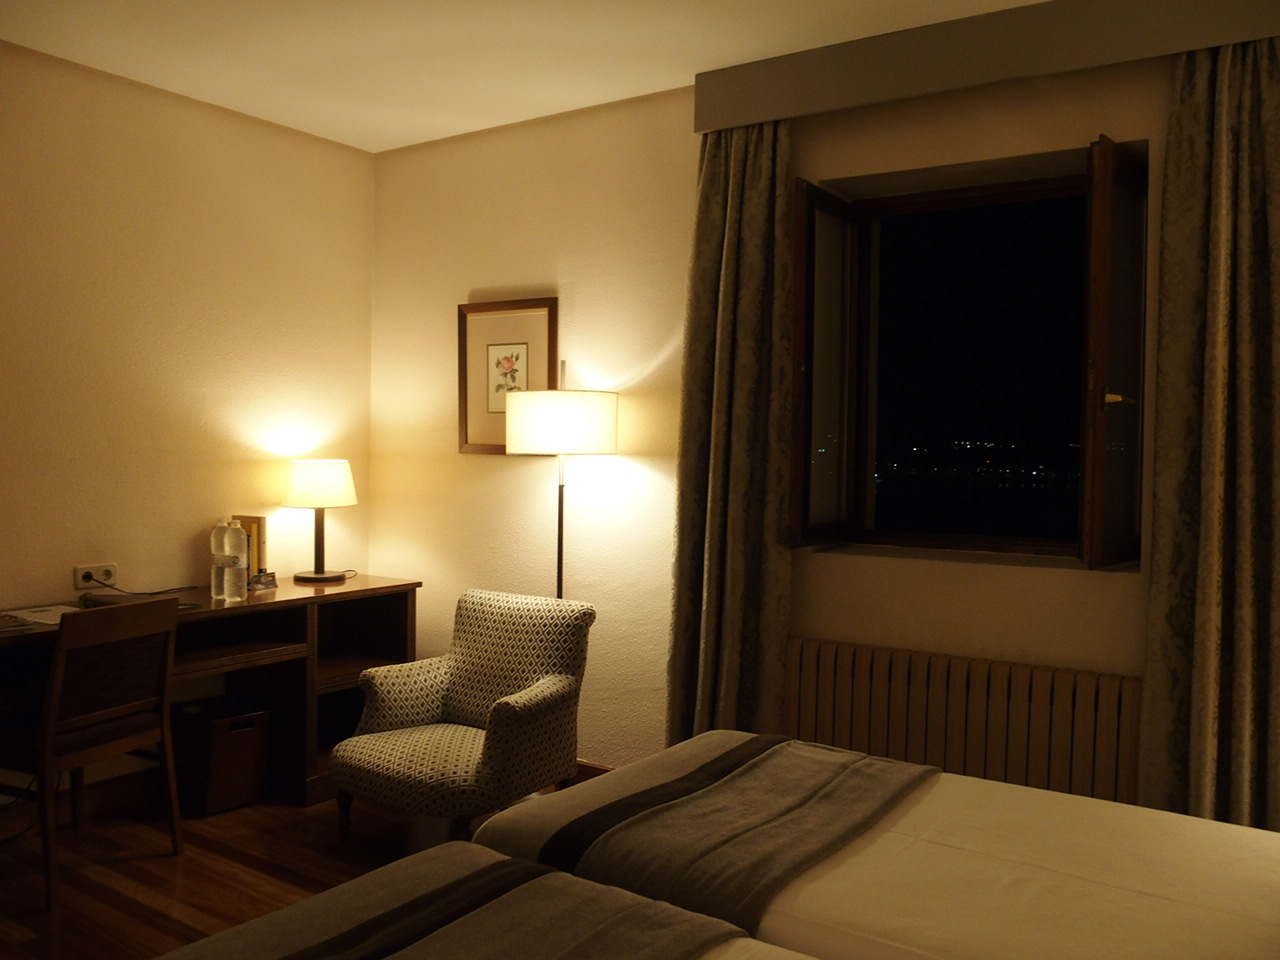 バスクオンダリビアのホテルパラドールの客室